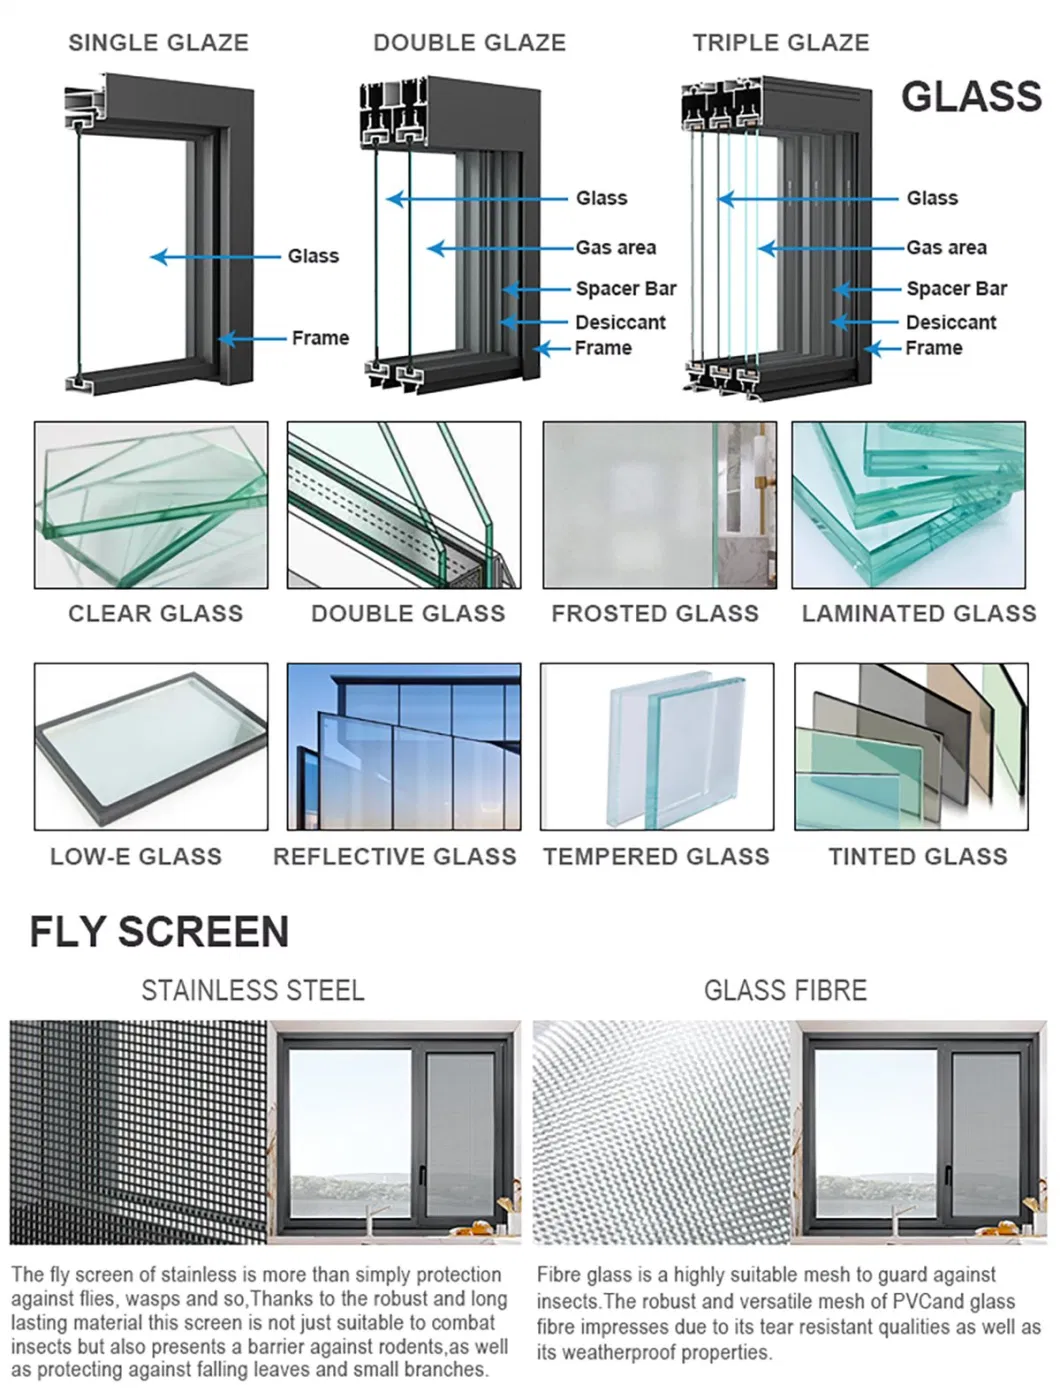 Wholesale Price Aluminum Door Profile 4 Panel Sliding Glass Door Hurricane-Proof Double Glazed Sliding Doors for Villa and Resort Hotel Project